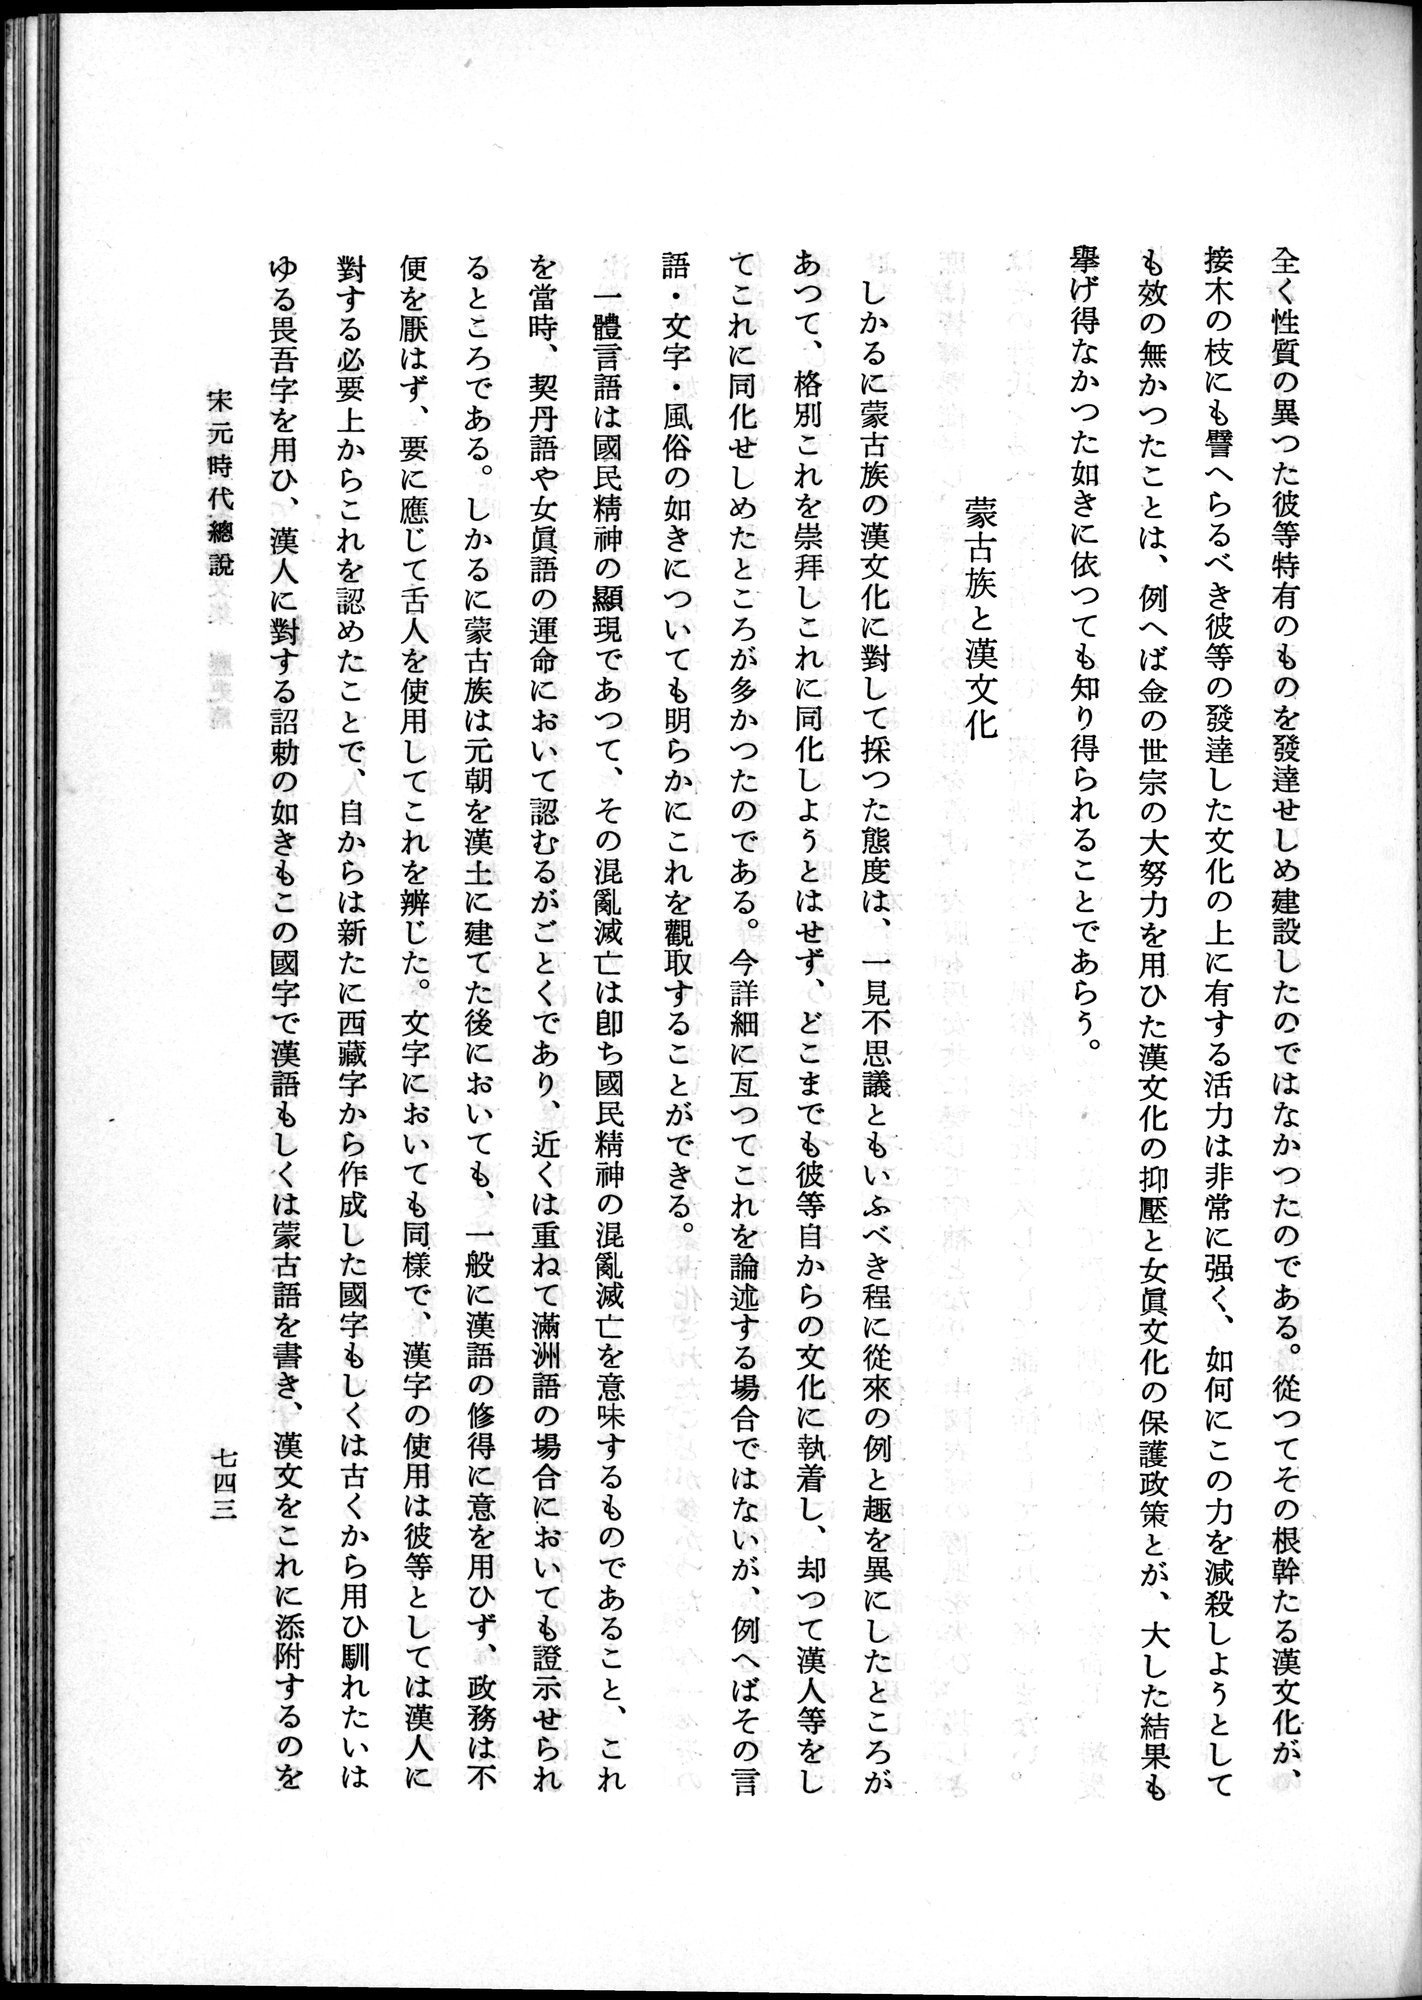 羽田博士史学論文集 : vol.1 / Page 781 (Grayscale High Resolution Image)